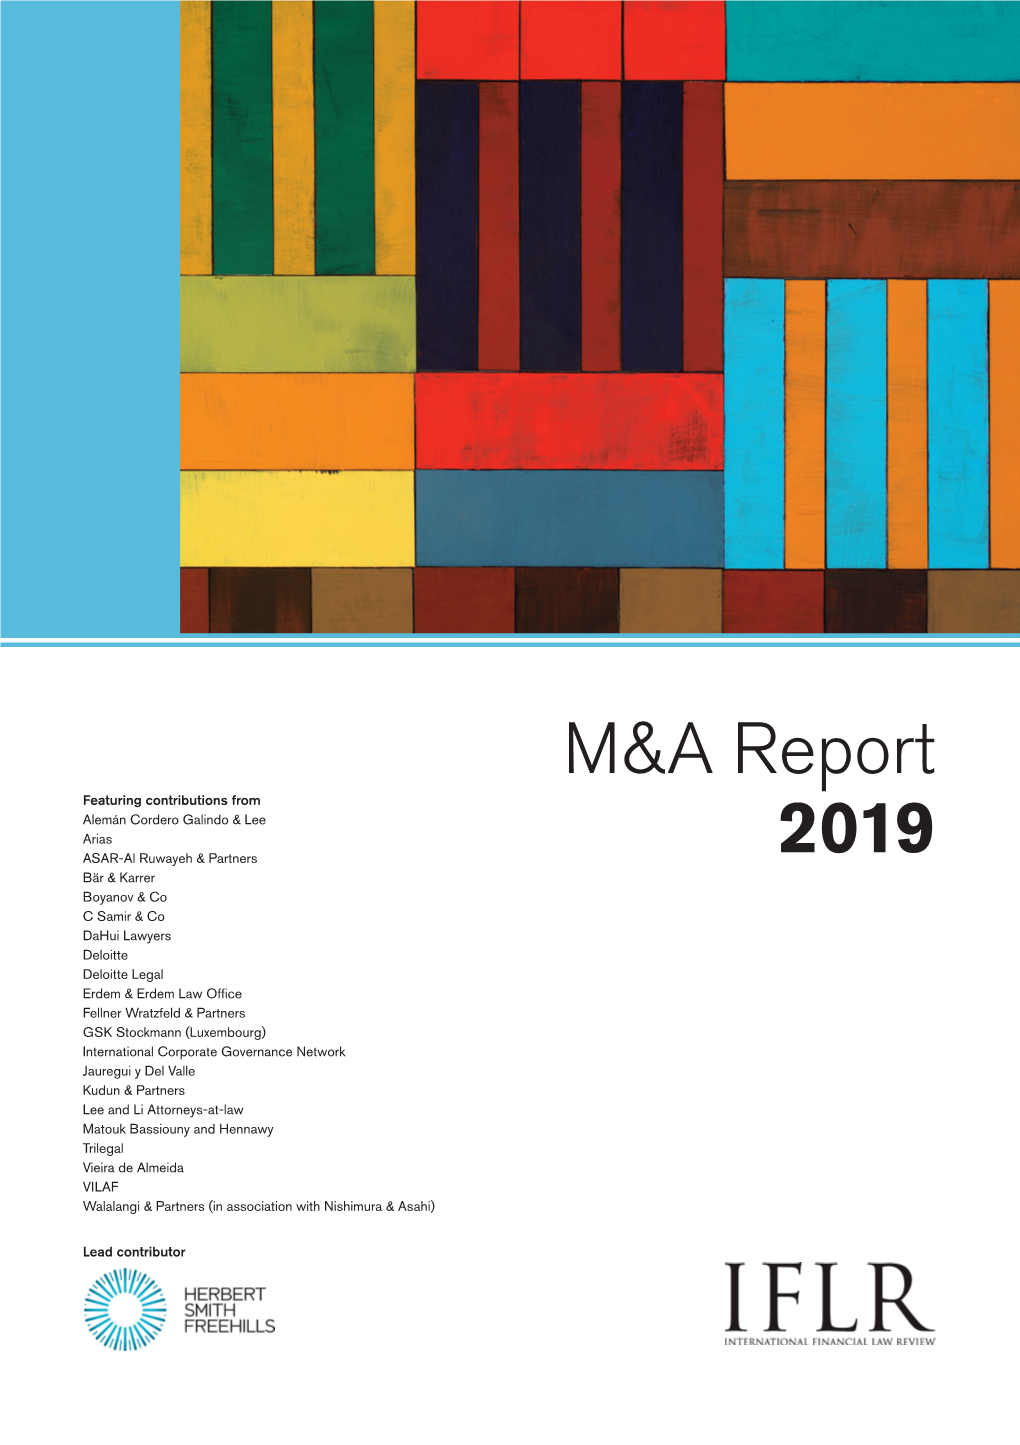 M&A Report 2019